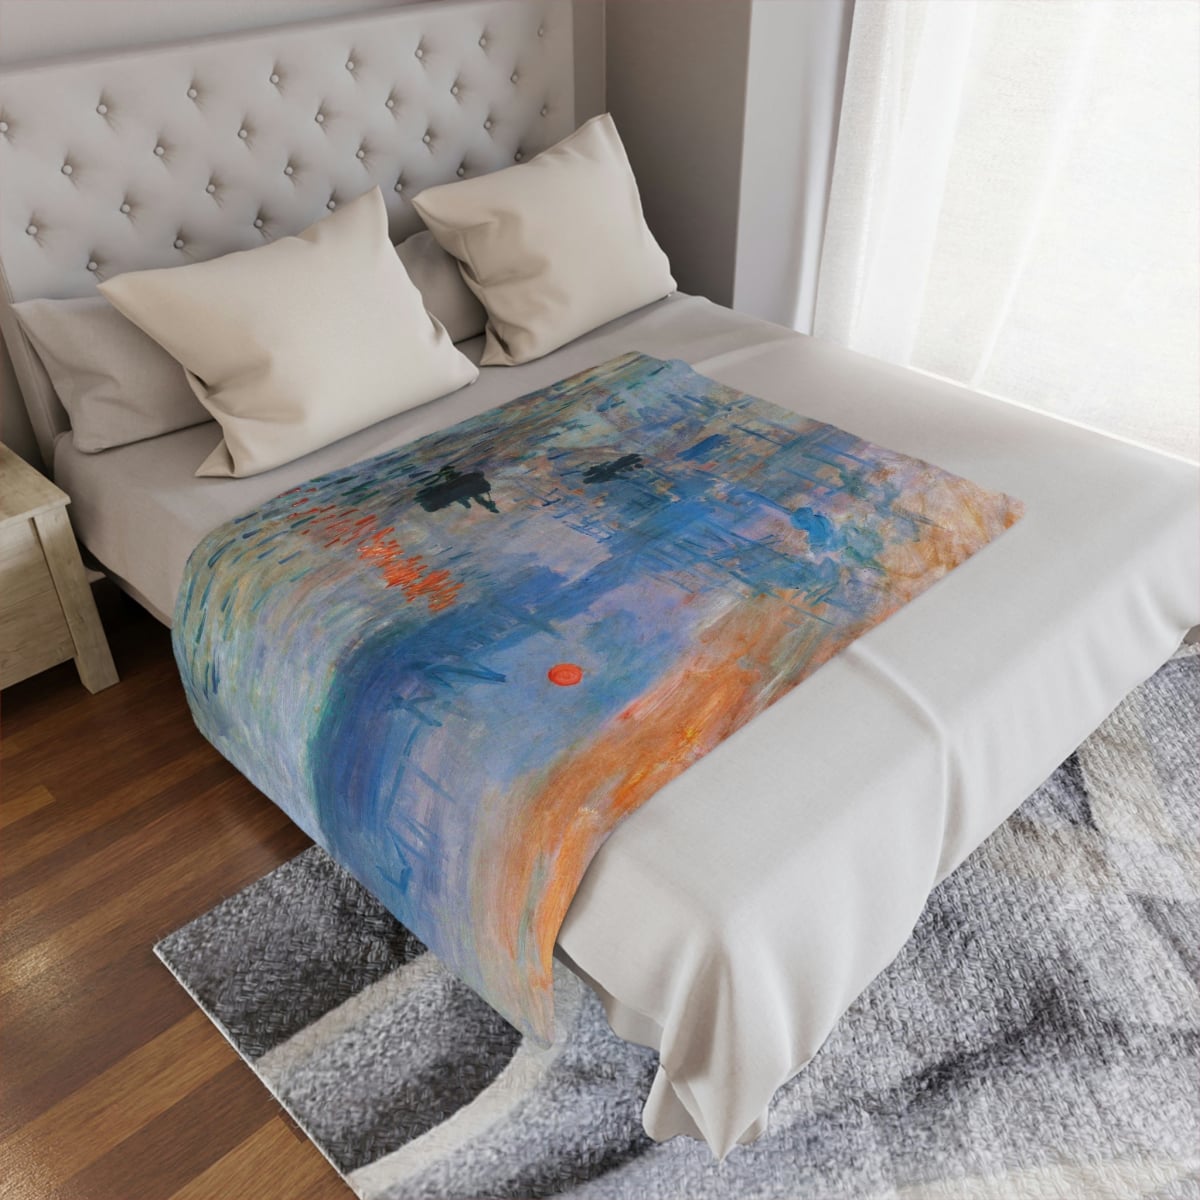 Monet Inspired Artistic Blanket